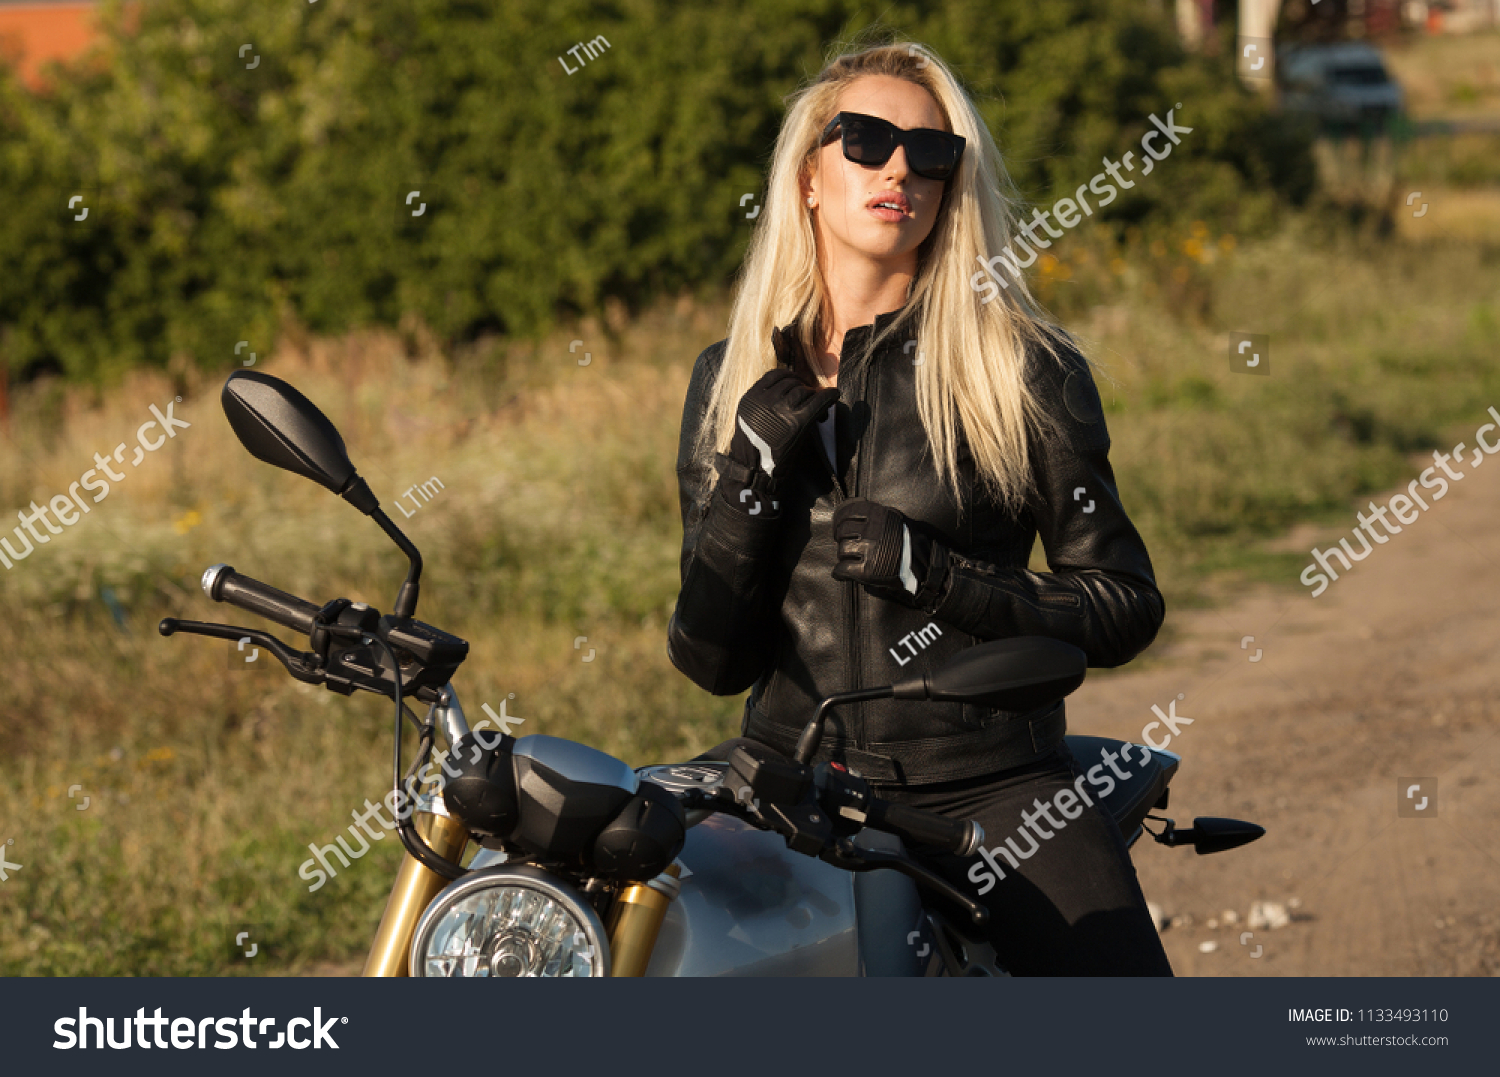 Best of Pictures of biker woman